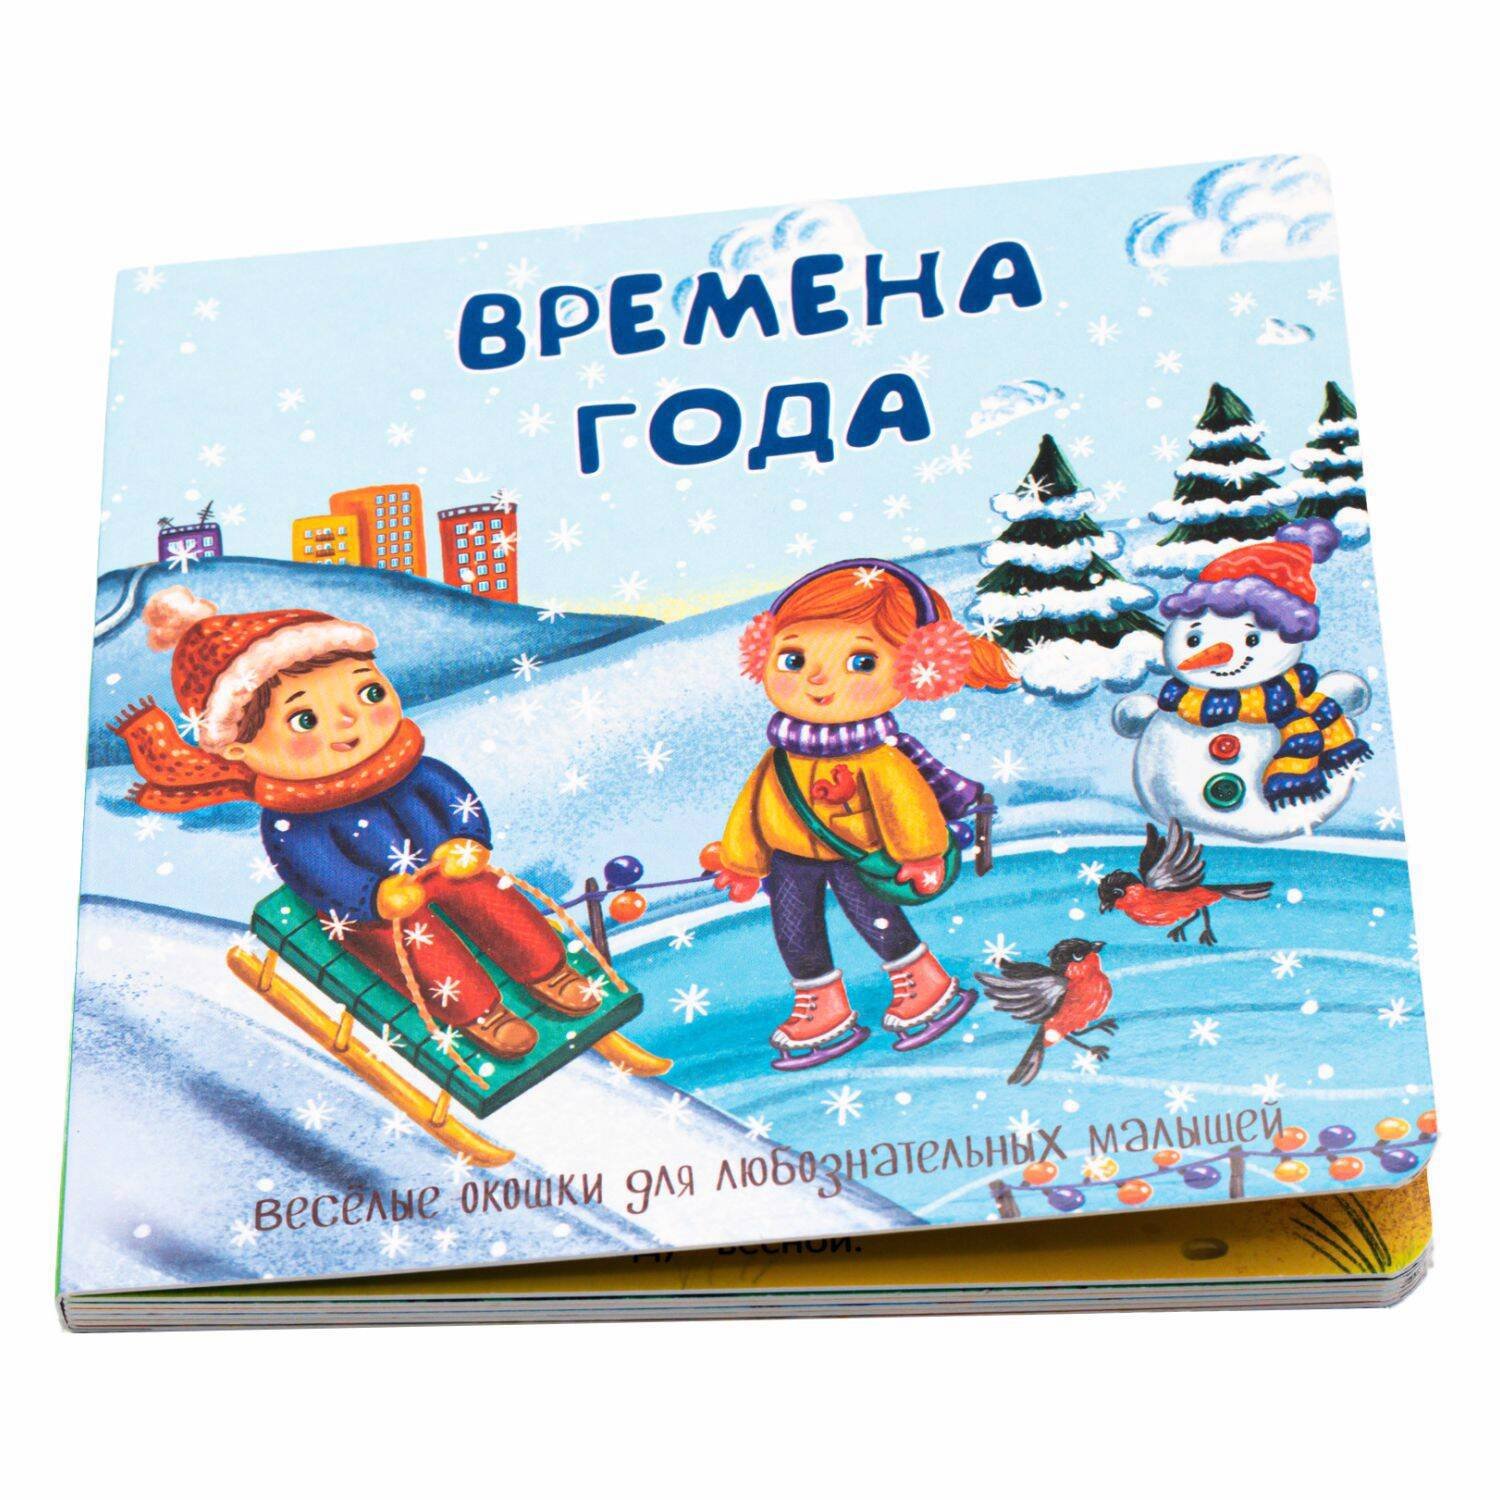 Иванова Оксана - Веселые окошки для любознательных малышей. Книжка с двойными окошками. "Времена года"